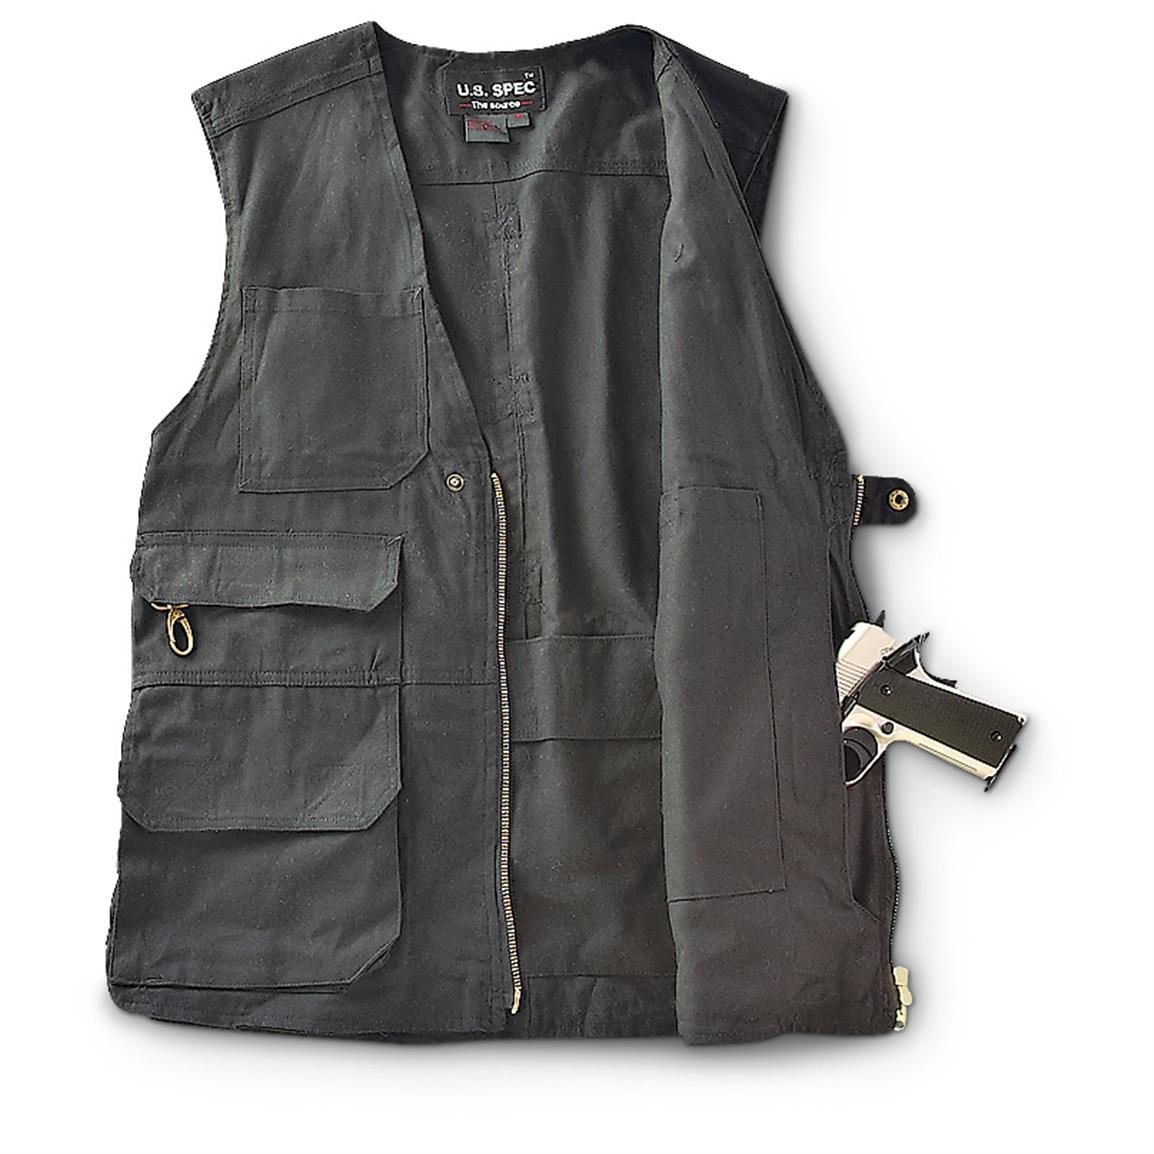 Multi - pocket Concealment Vest - 210411, Conceal & Carry at Sportsman ...